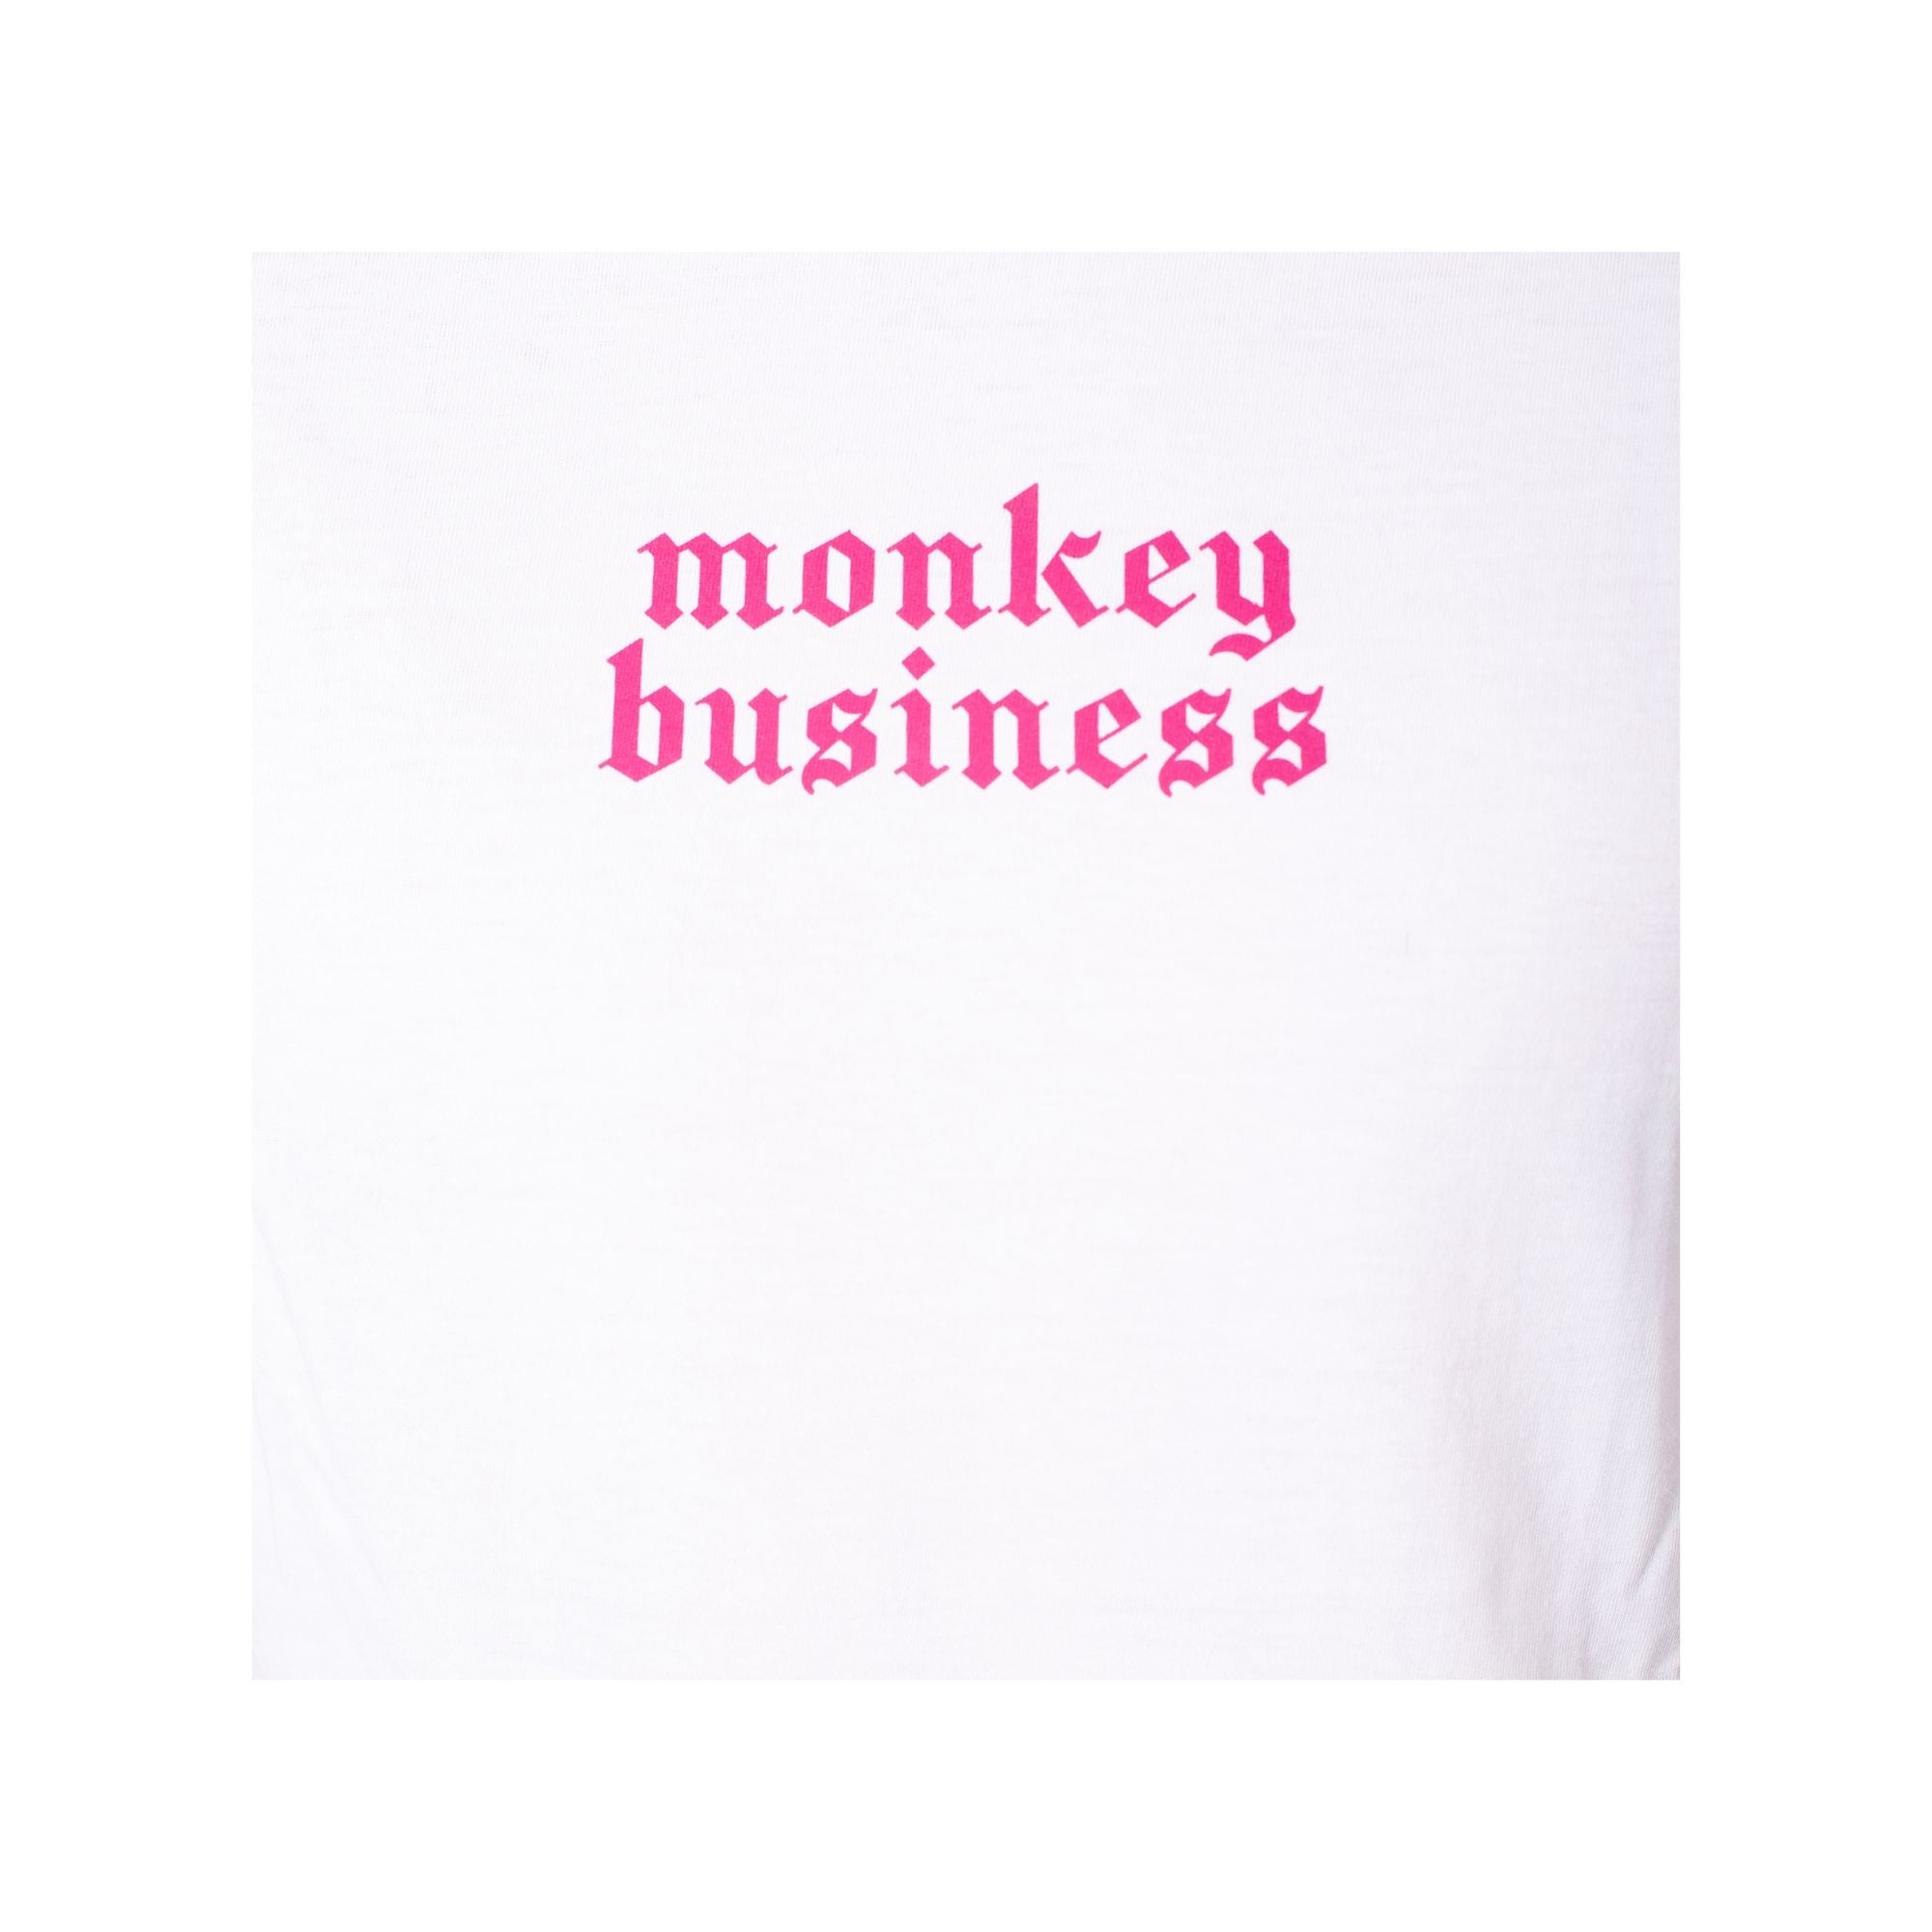 Dettaglio ravvicinato scritta Monkey Business sul petto